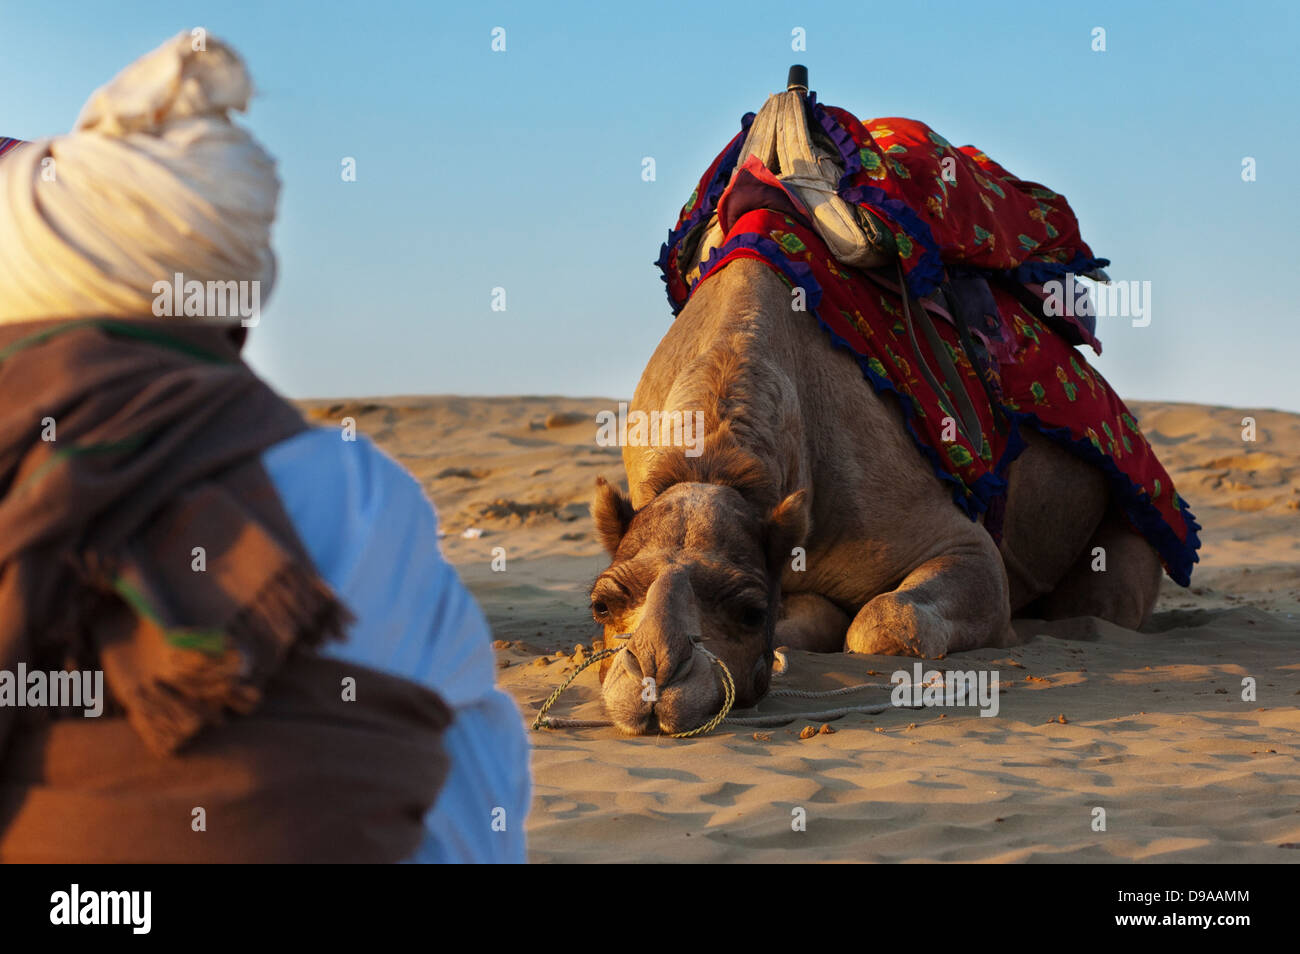 Chamelier attend que les touristes à la Dune de sable de Sam à Jaisalmer, Inde. Banque D'Images